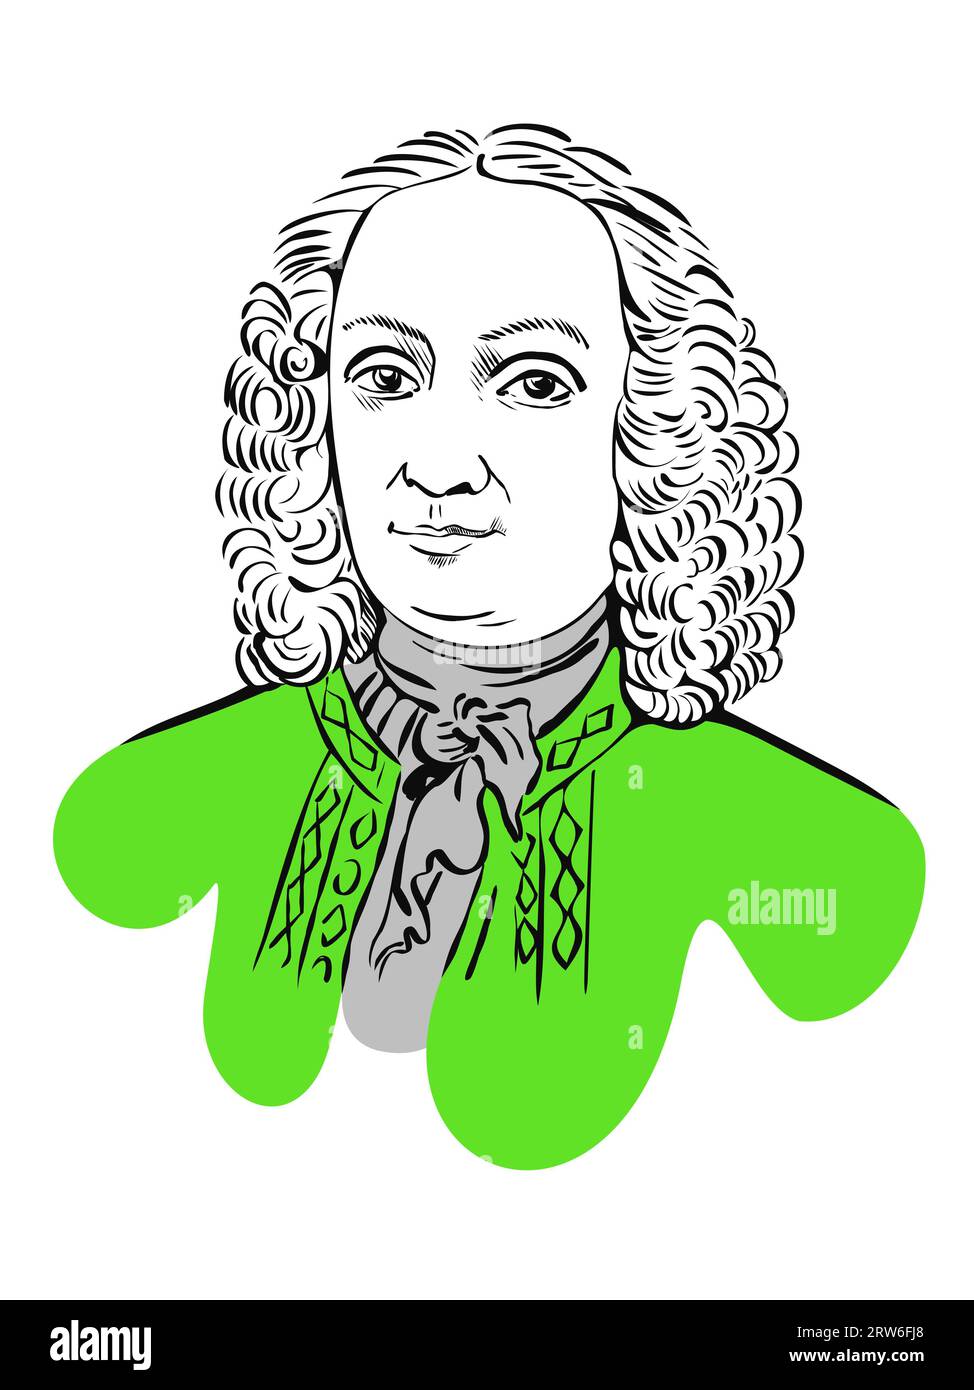 Antonio Lucio Vivaldi, portrait, illustration vectorielle/croquis/dessin isolé sur fond transparent Banque D'Images